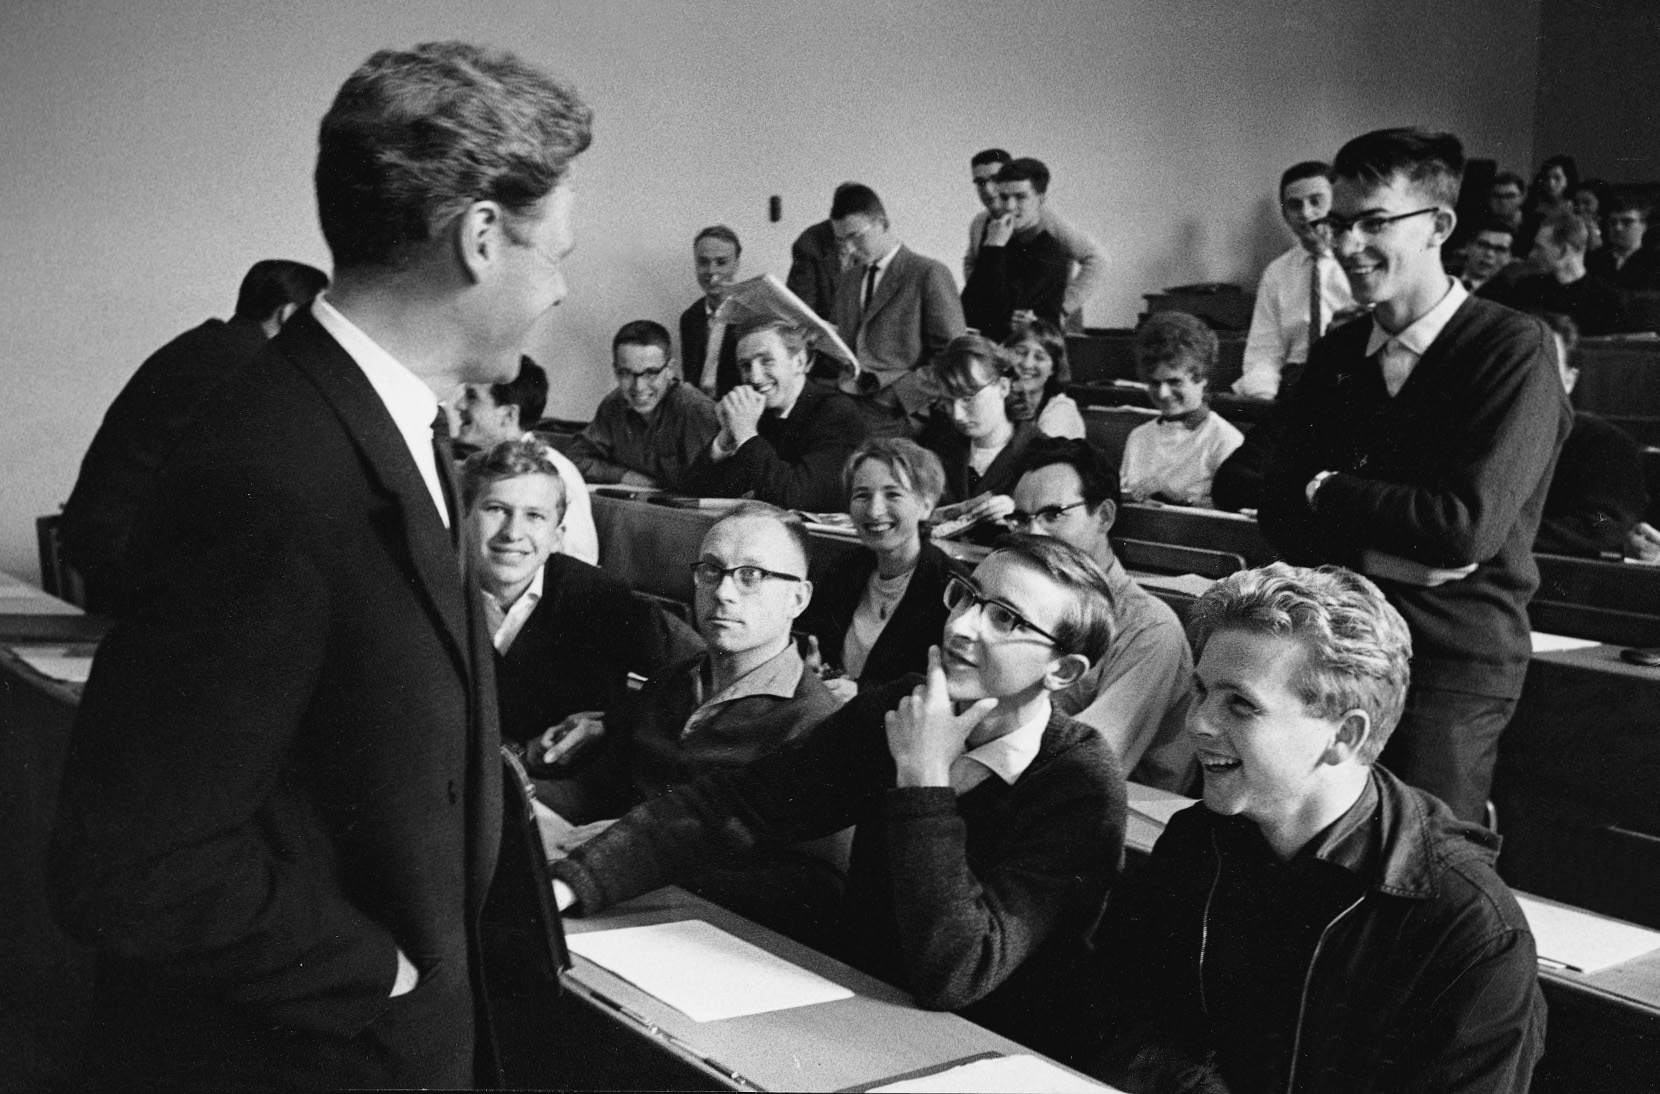 Das Bild in schwarz-weiß zeigt den 32-jährigen Gründer der Stiftung Weltethos Hans Küng in einem Hörsaal im Gespräch mit Studenten.